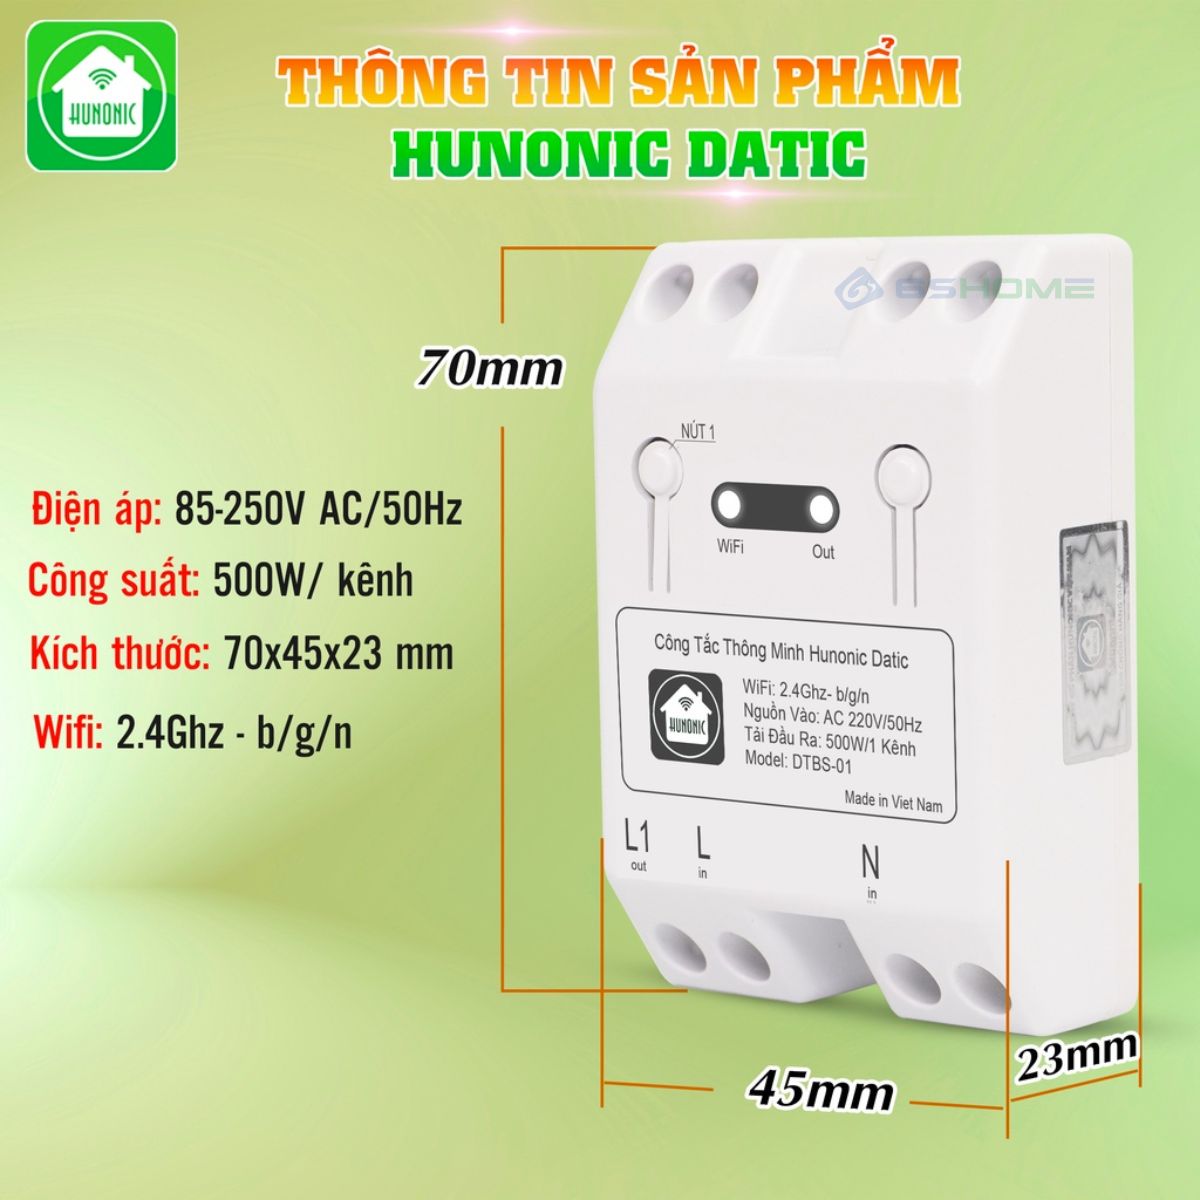 Hình ảnh Công Tắc Thông Minh WiFi Hunonic Datic Basic 500W DTBS01, App Tiếng Việt, Điều Khiển Từ Xa Trên Điện Thoại qua WiFi/4G